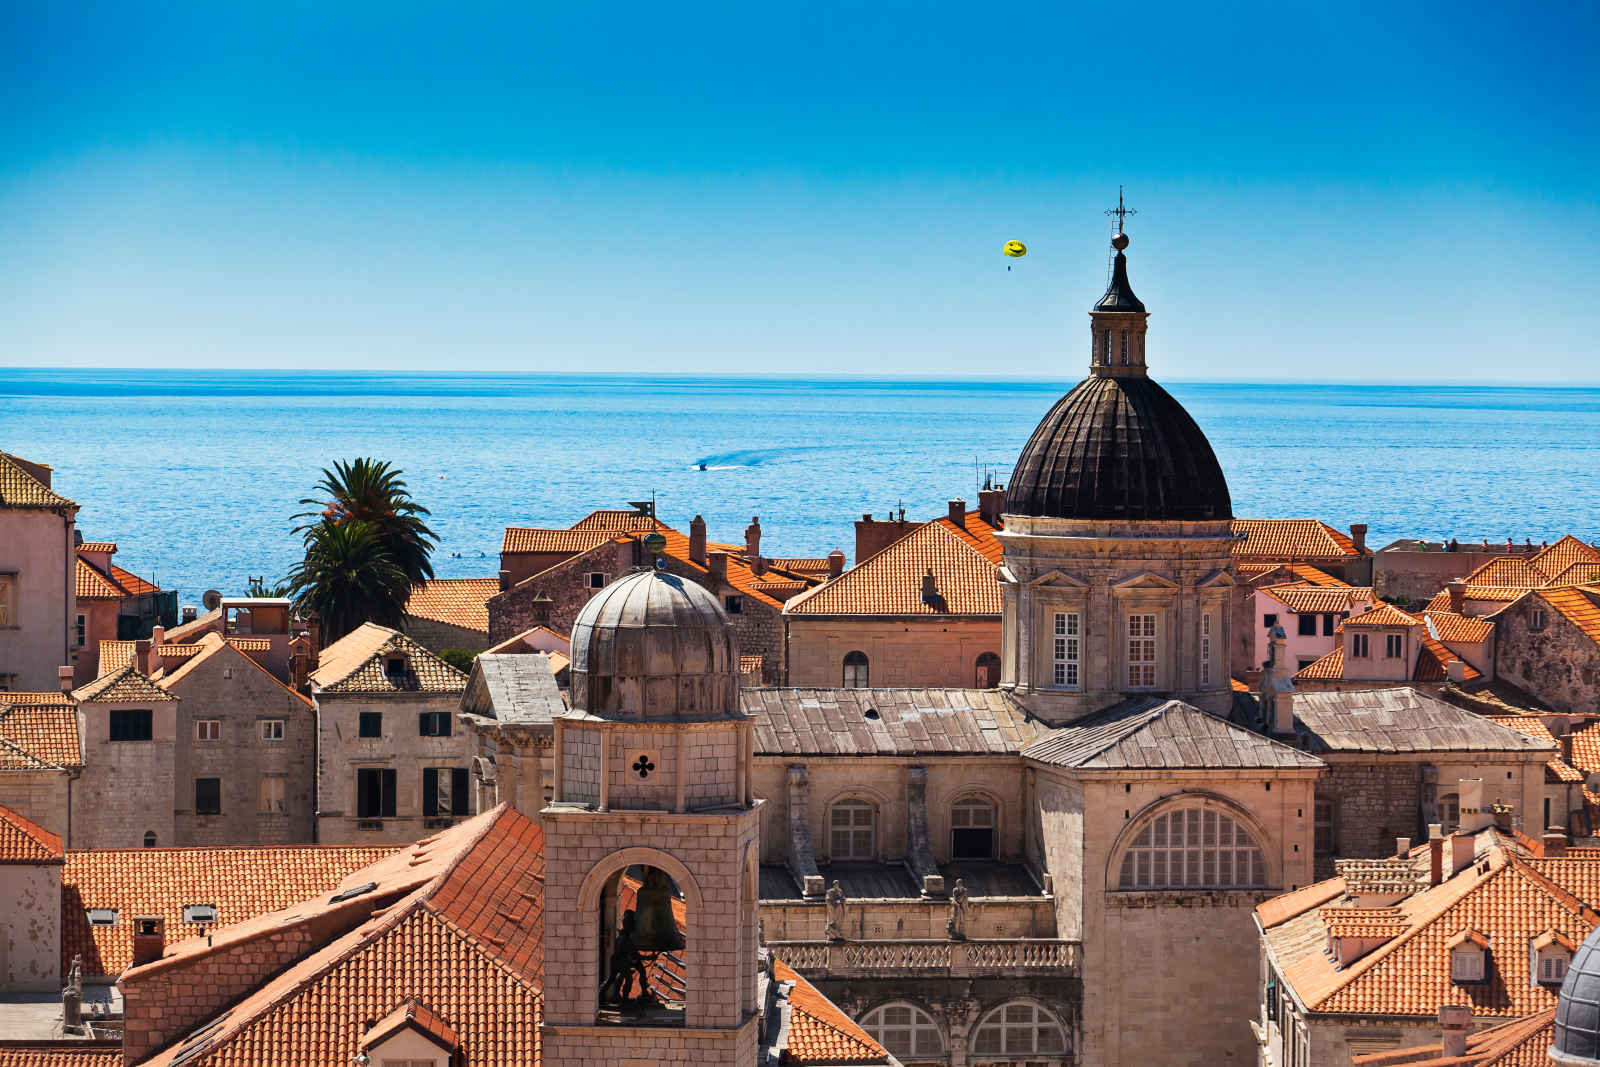 Croatie : Panorama de l'Adriatique